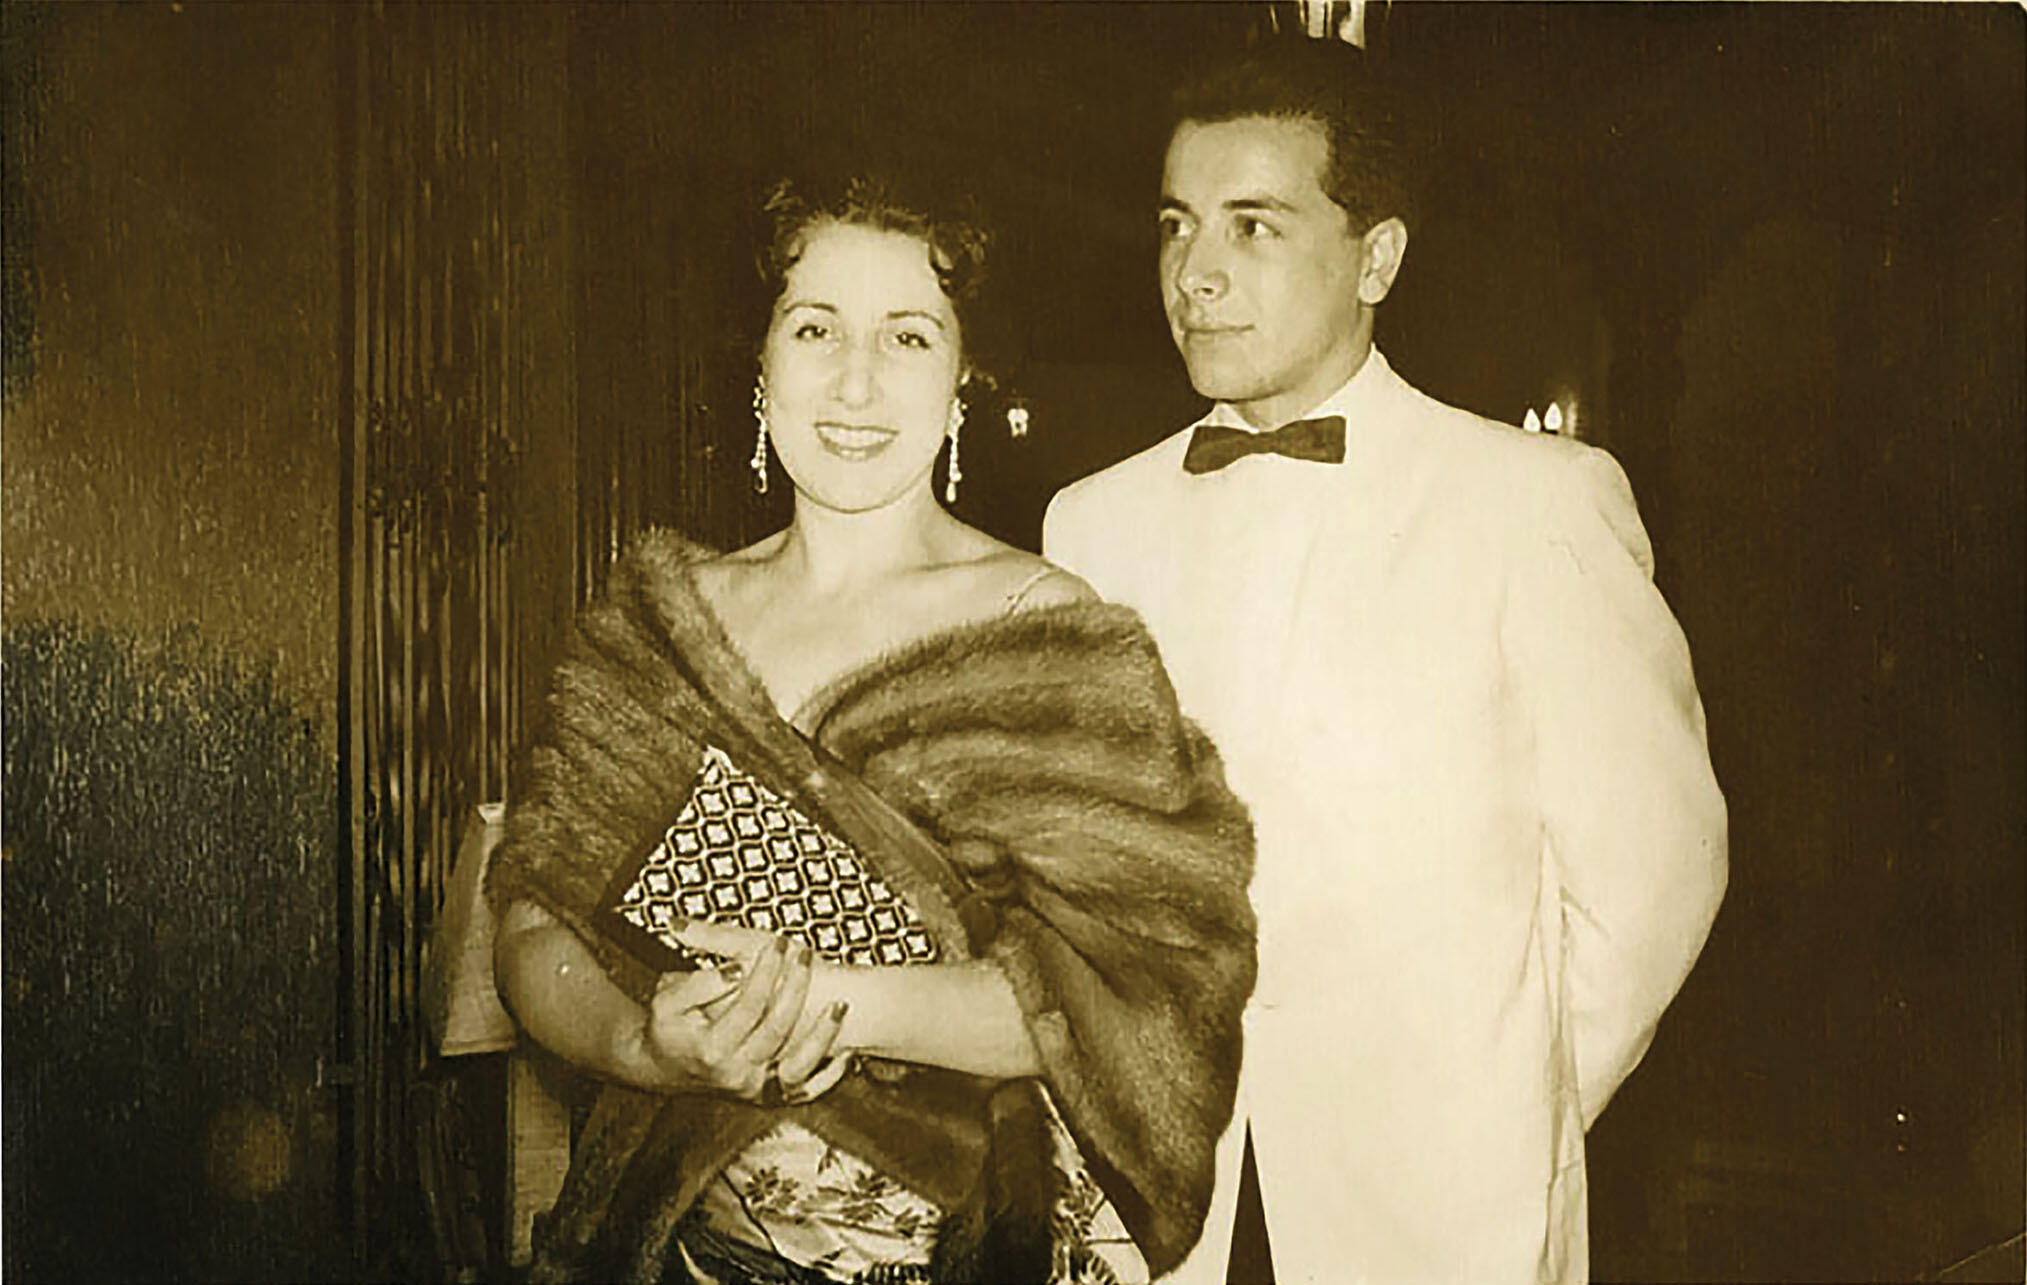 Juan Guzmán Tapia escorts his mother, Raquel Tapia Caballero, to a function in El Salvador, 1957. (Photo courtesy of Juan Guzmán Tapia.)